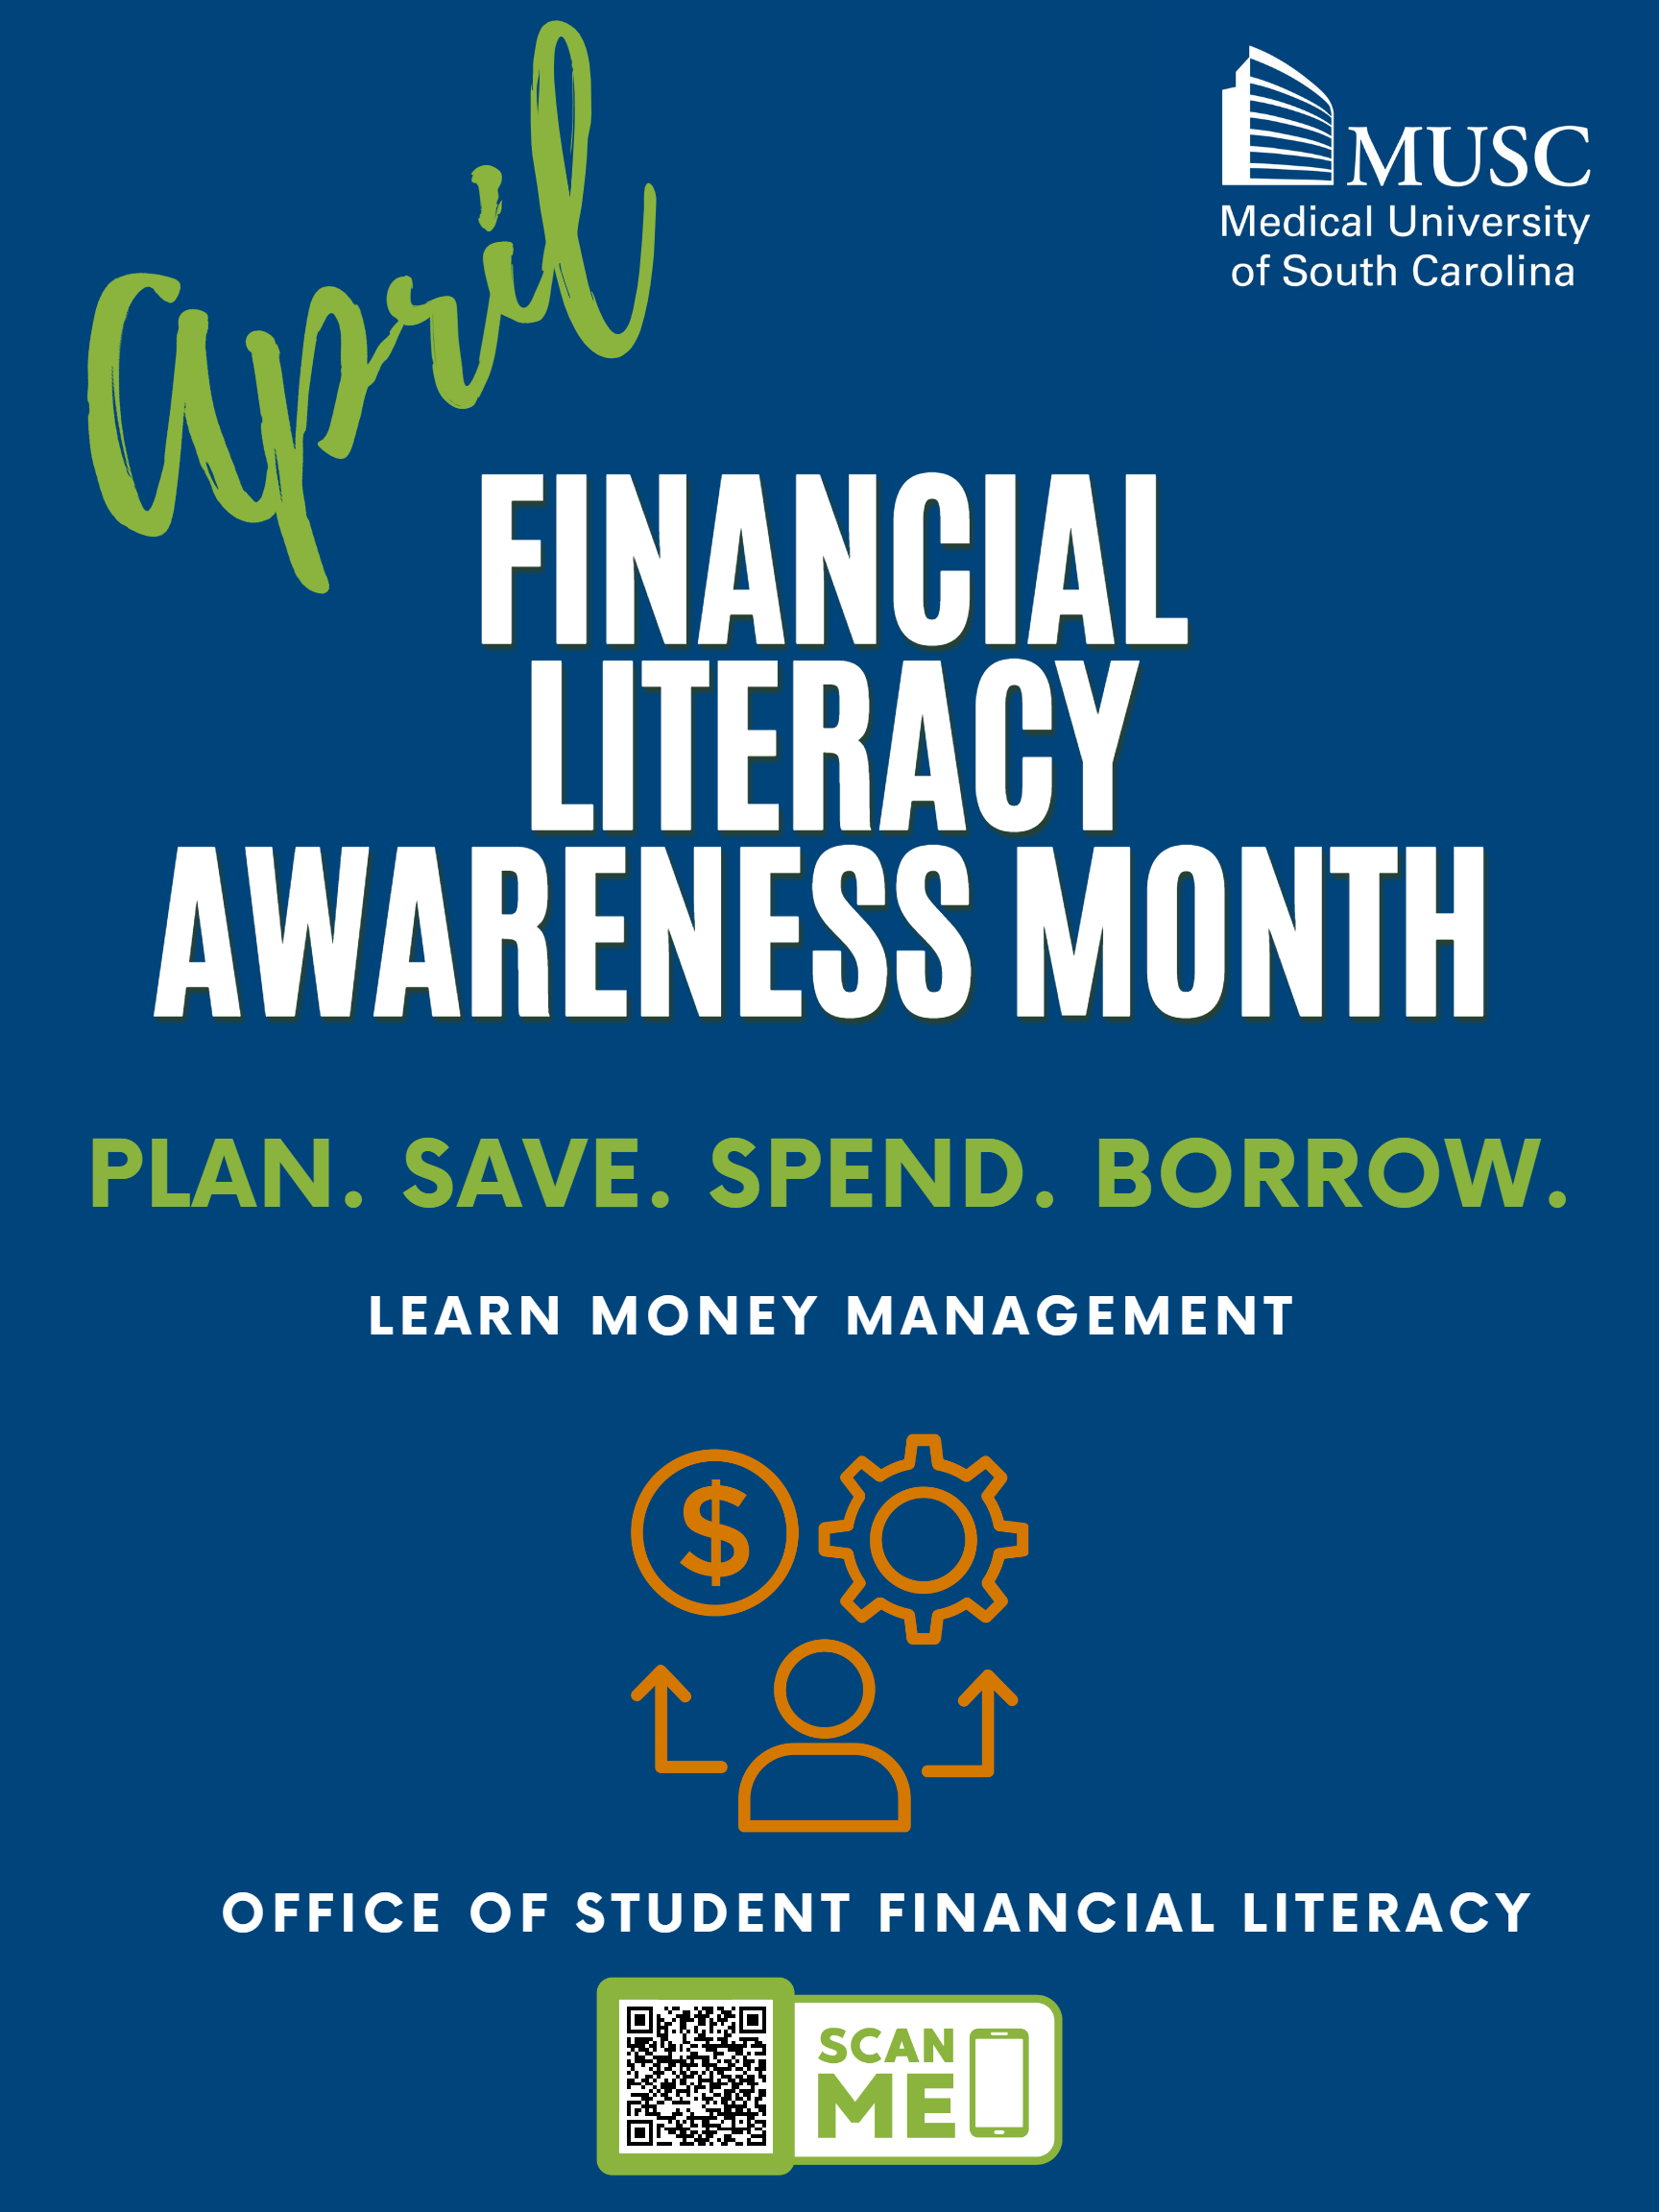 Financial Literacy Awareness Month MUSC